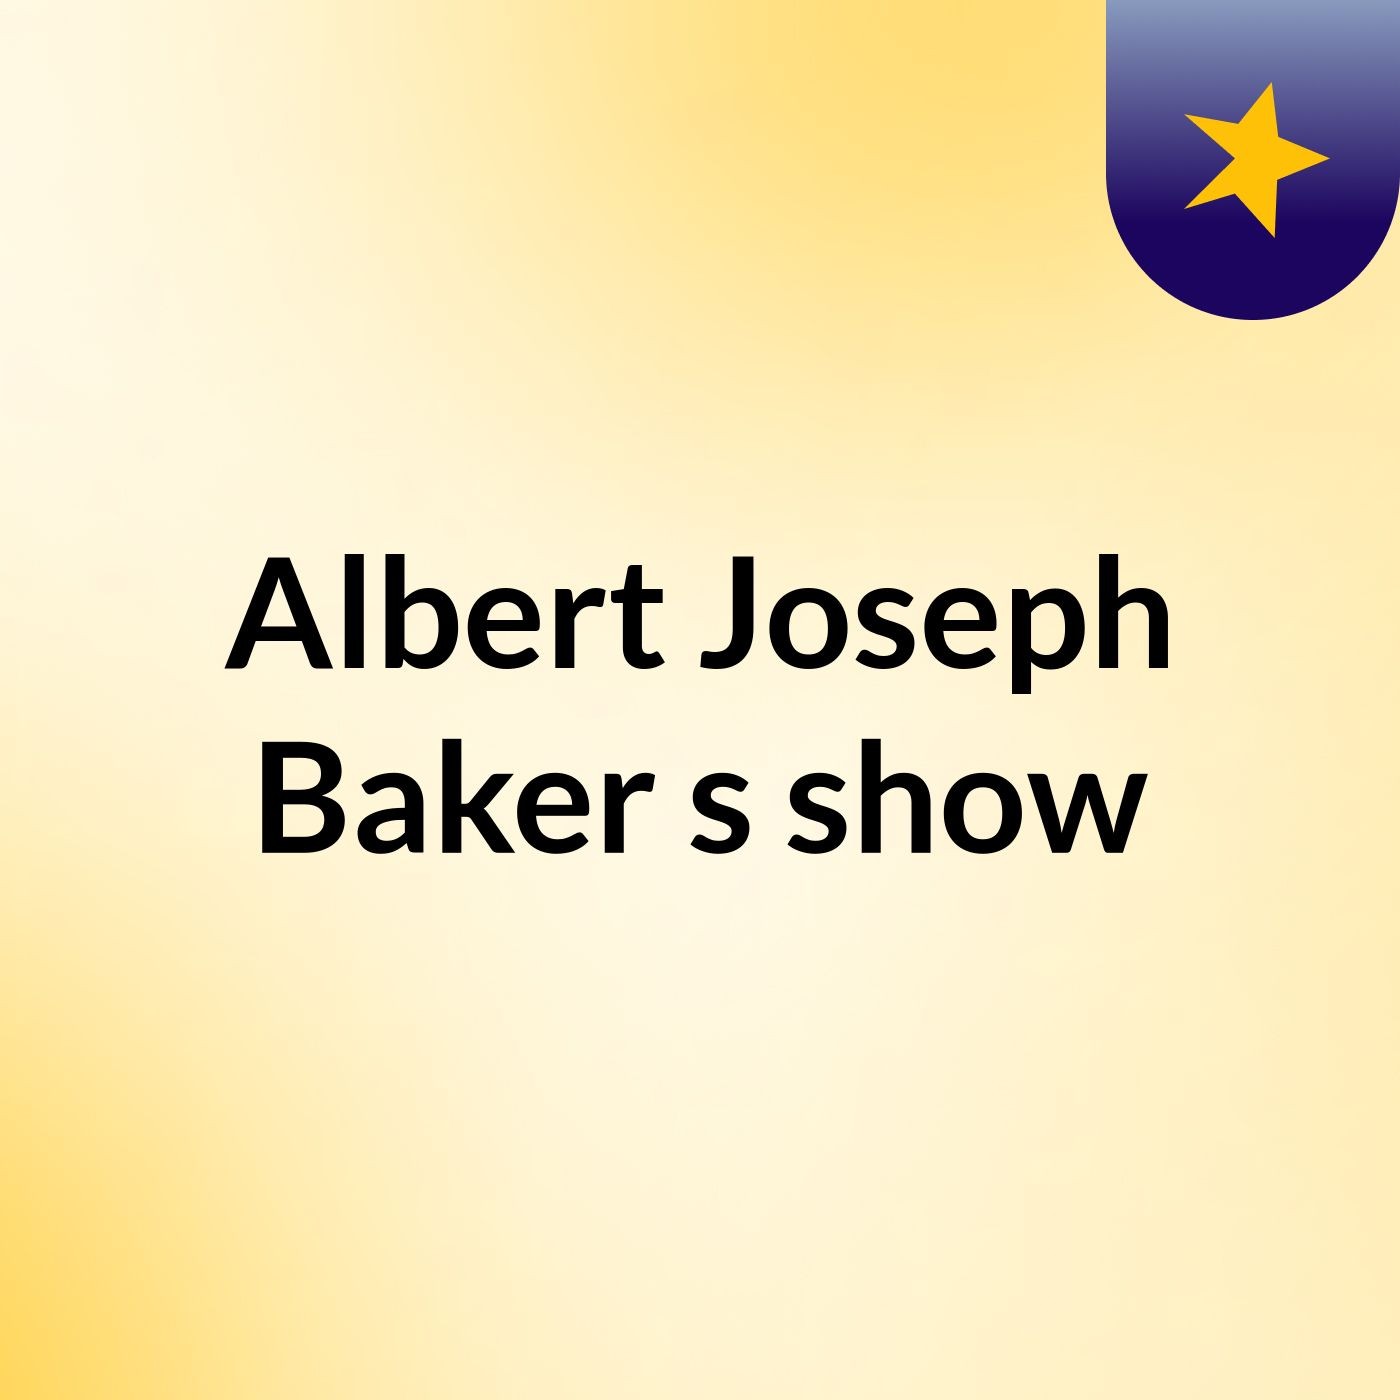 Albert Joseph Baker's show